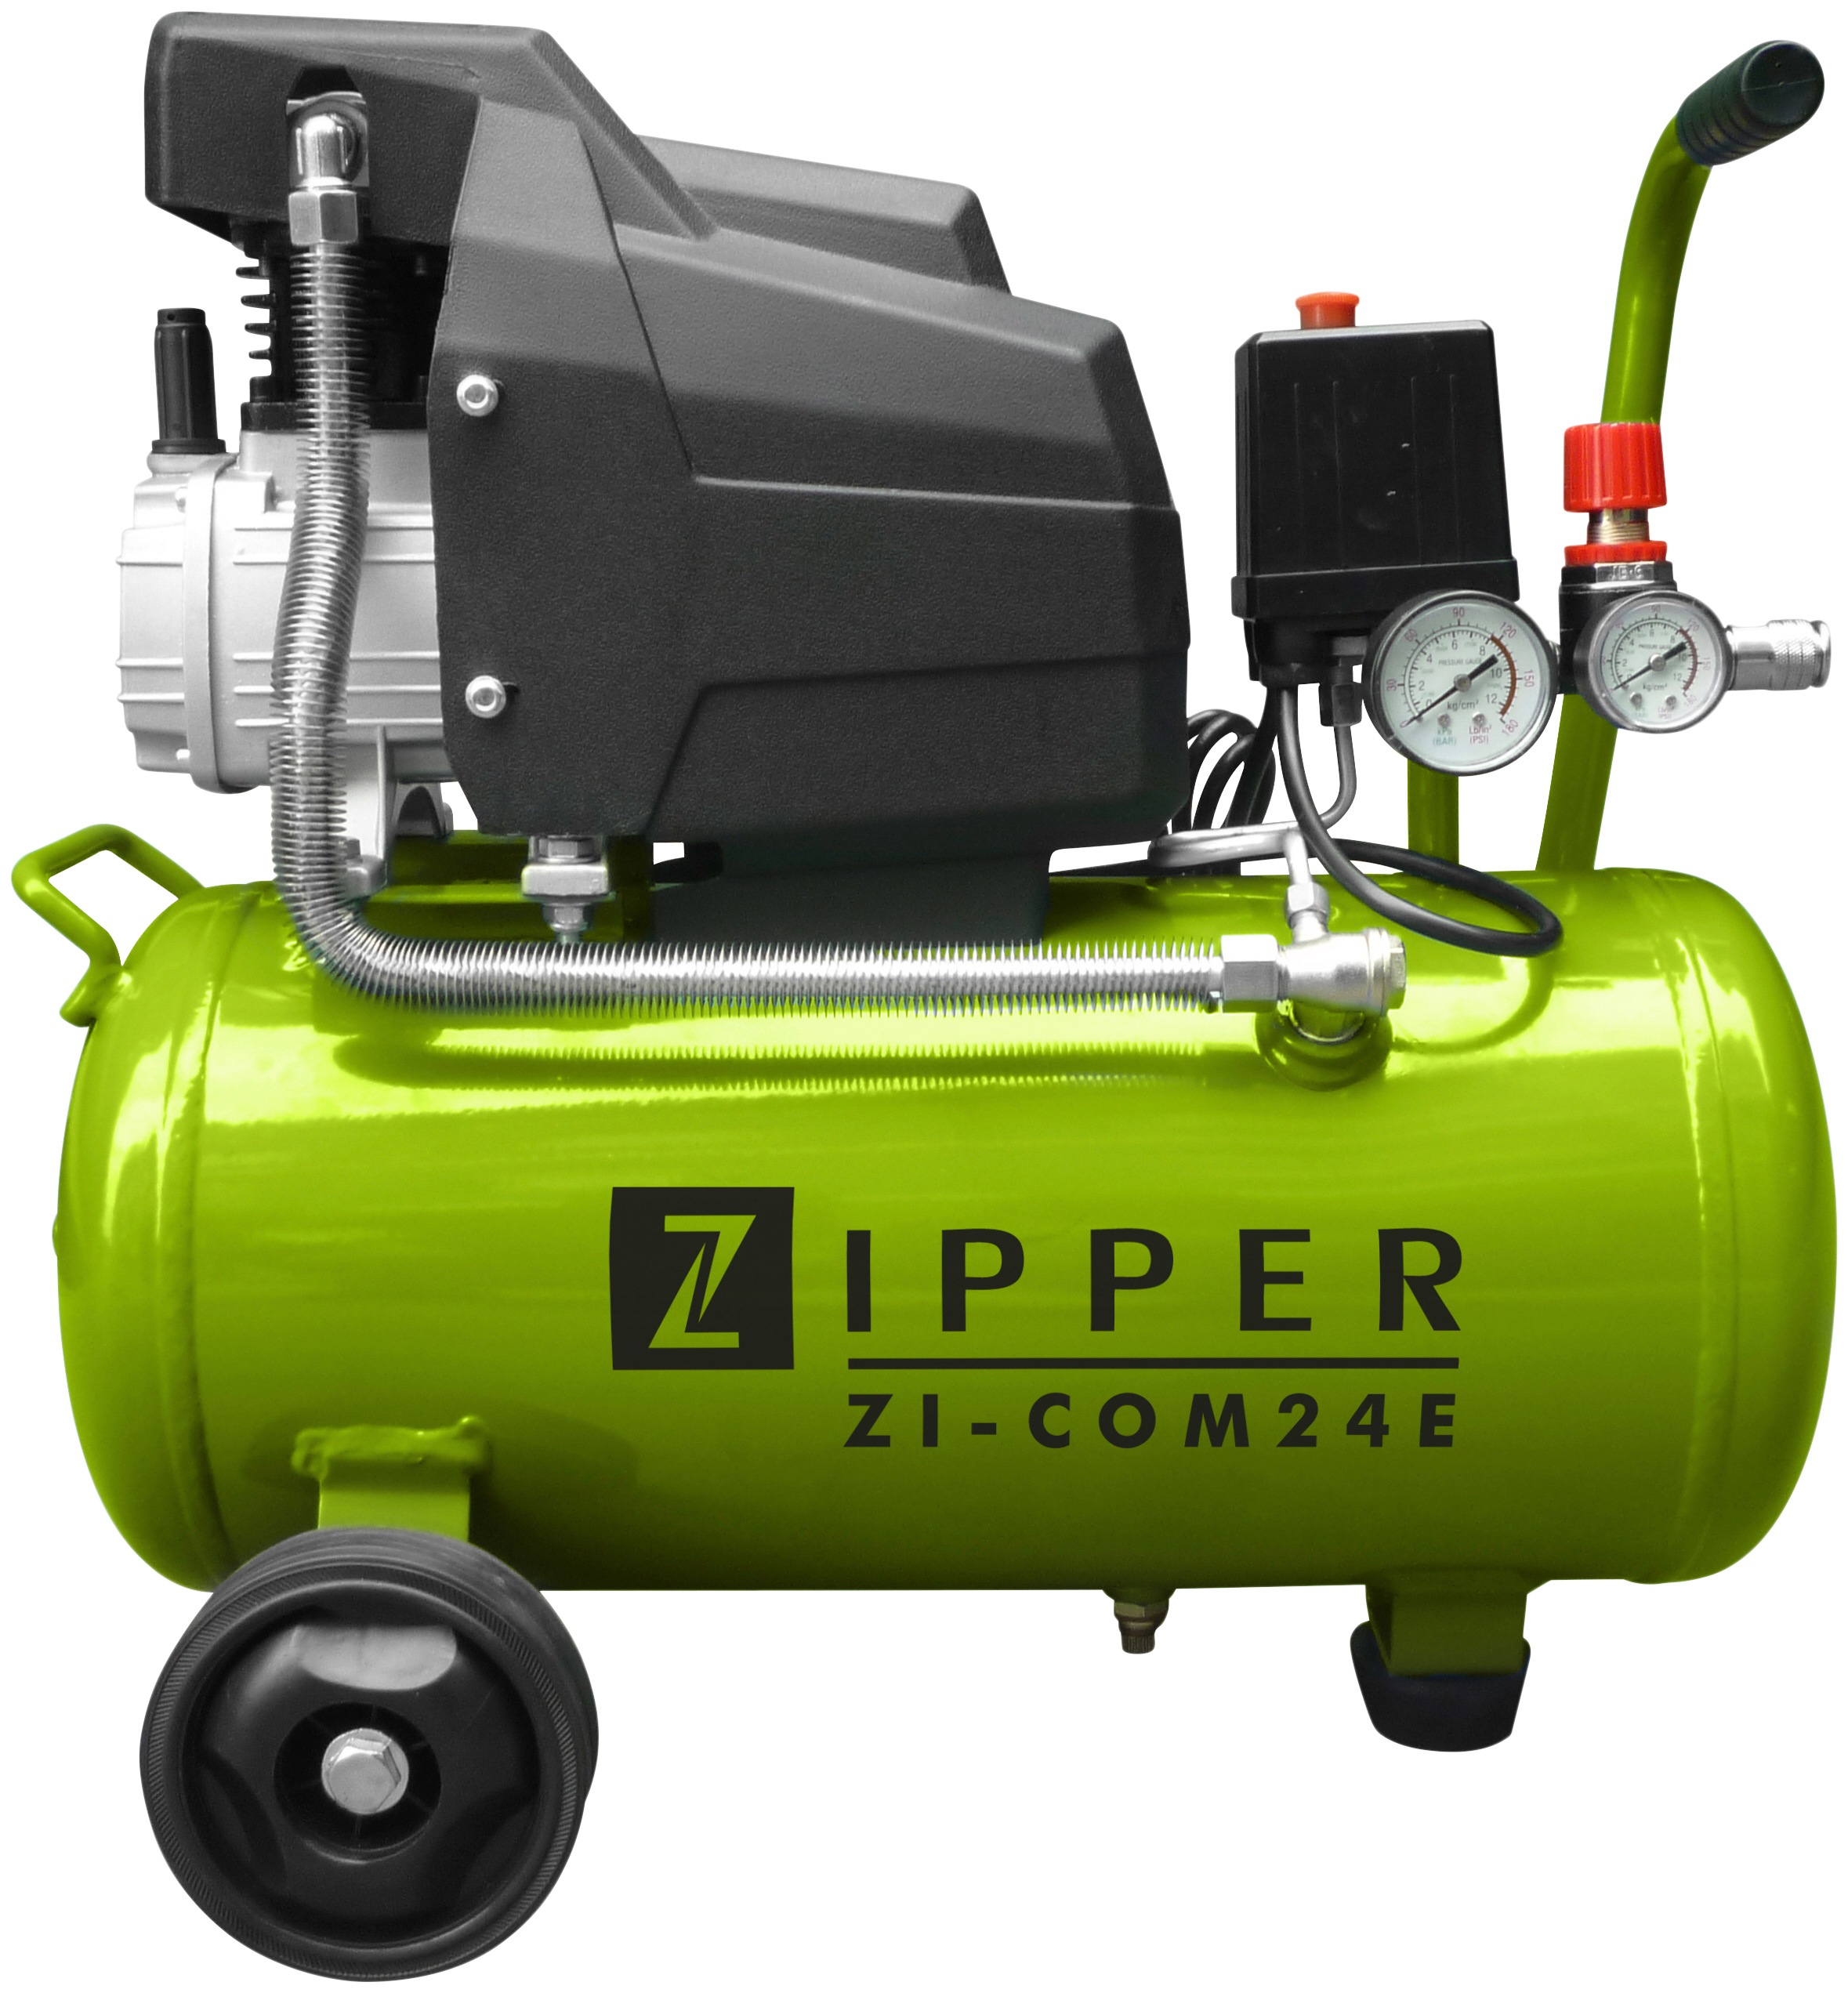 Schnellstmögliche Lieferung am nächsten Tag ZIPPER Maschinen Online-Shop | » BAUR Baugeräte & Werkzeuge